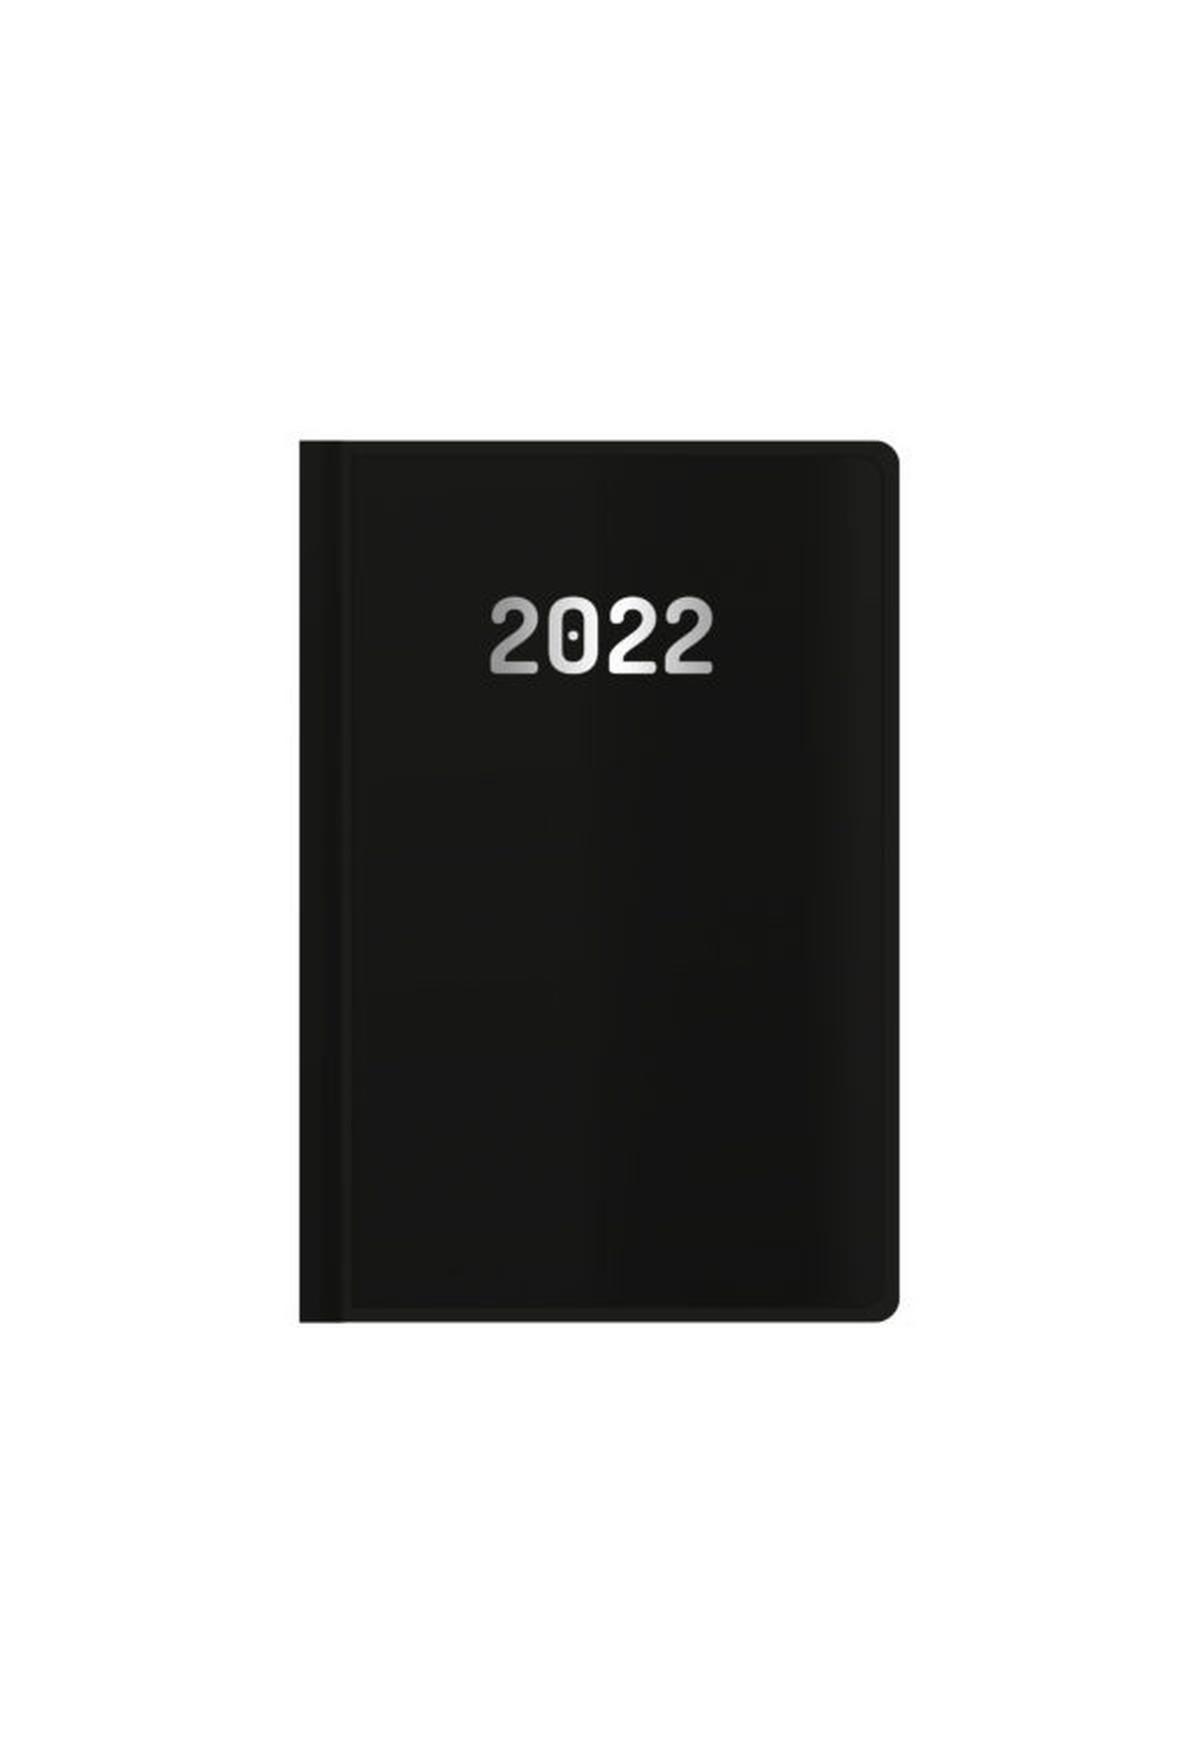 Ημερήσιο ημερολόγιο 2022 vintage μαύρο 17 x 25 cm